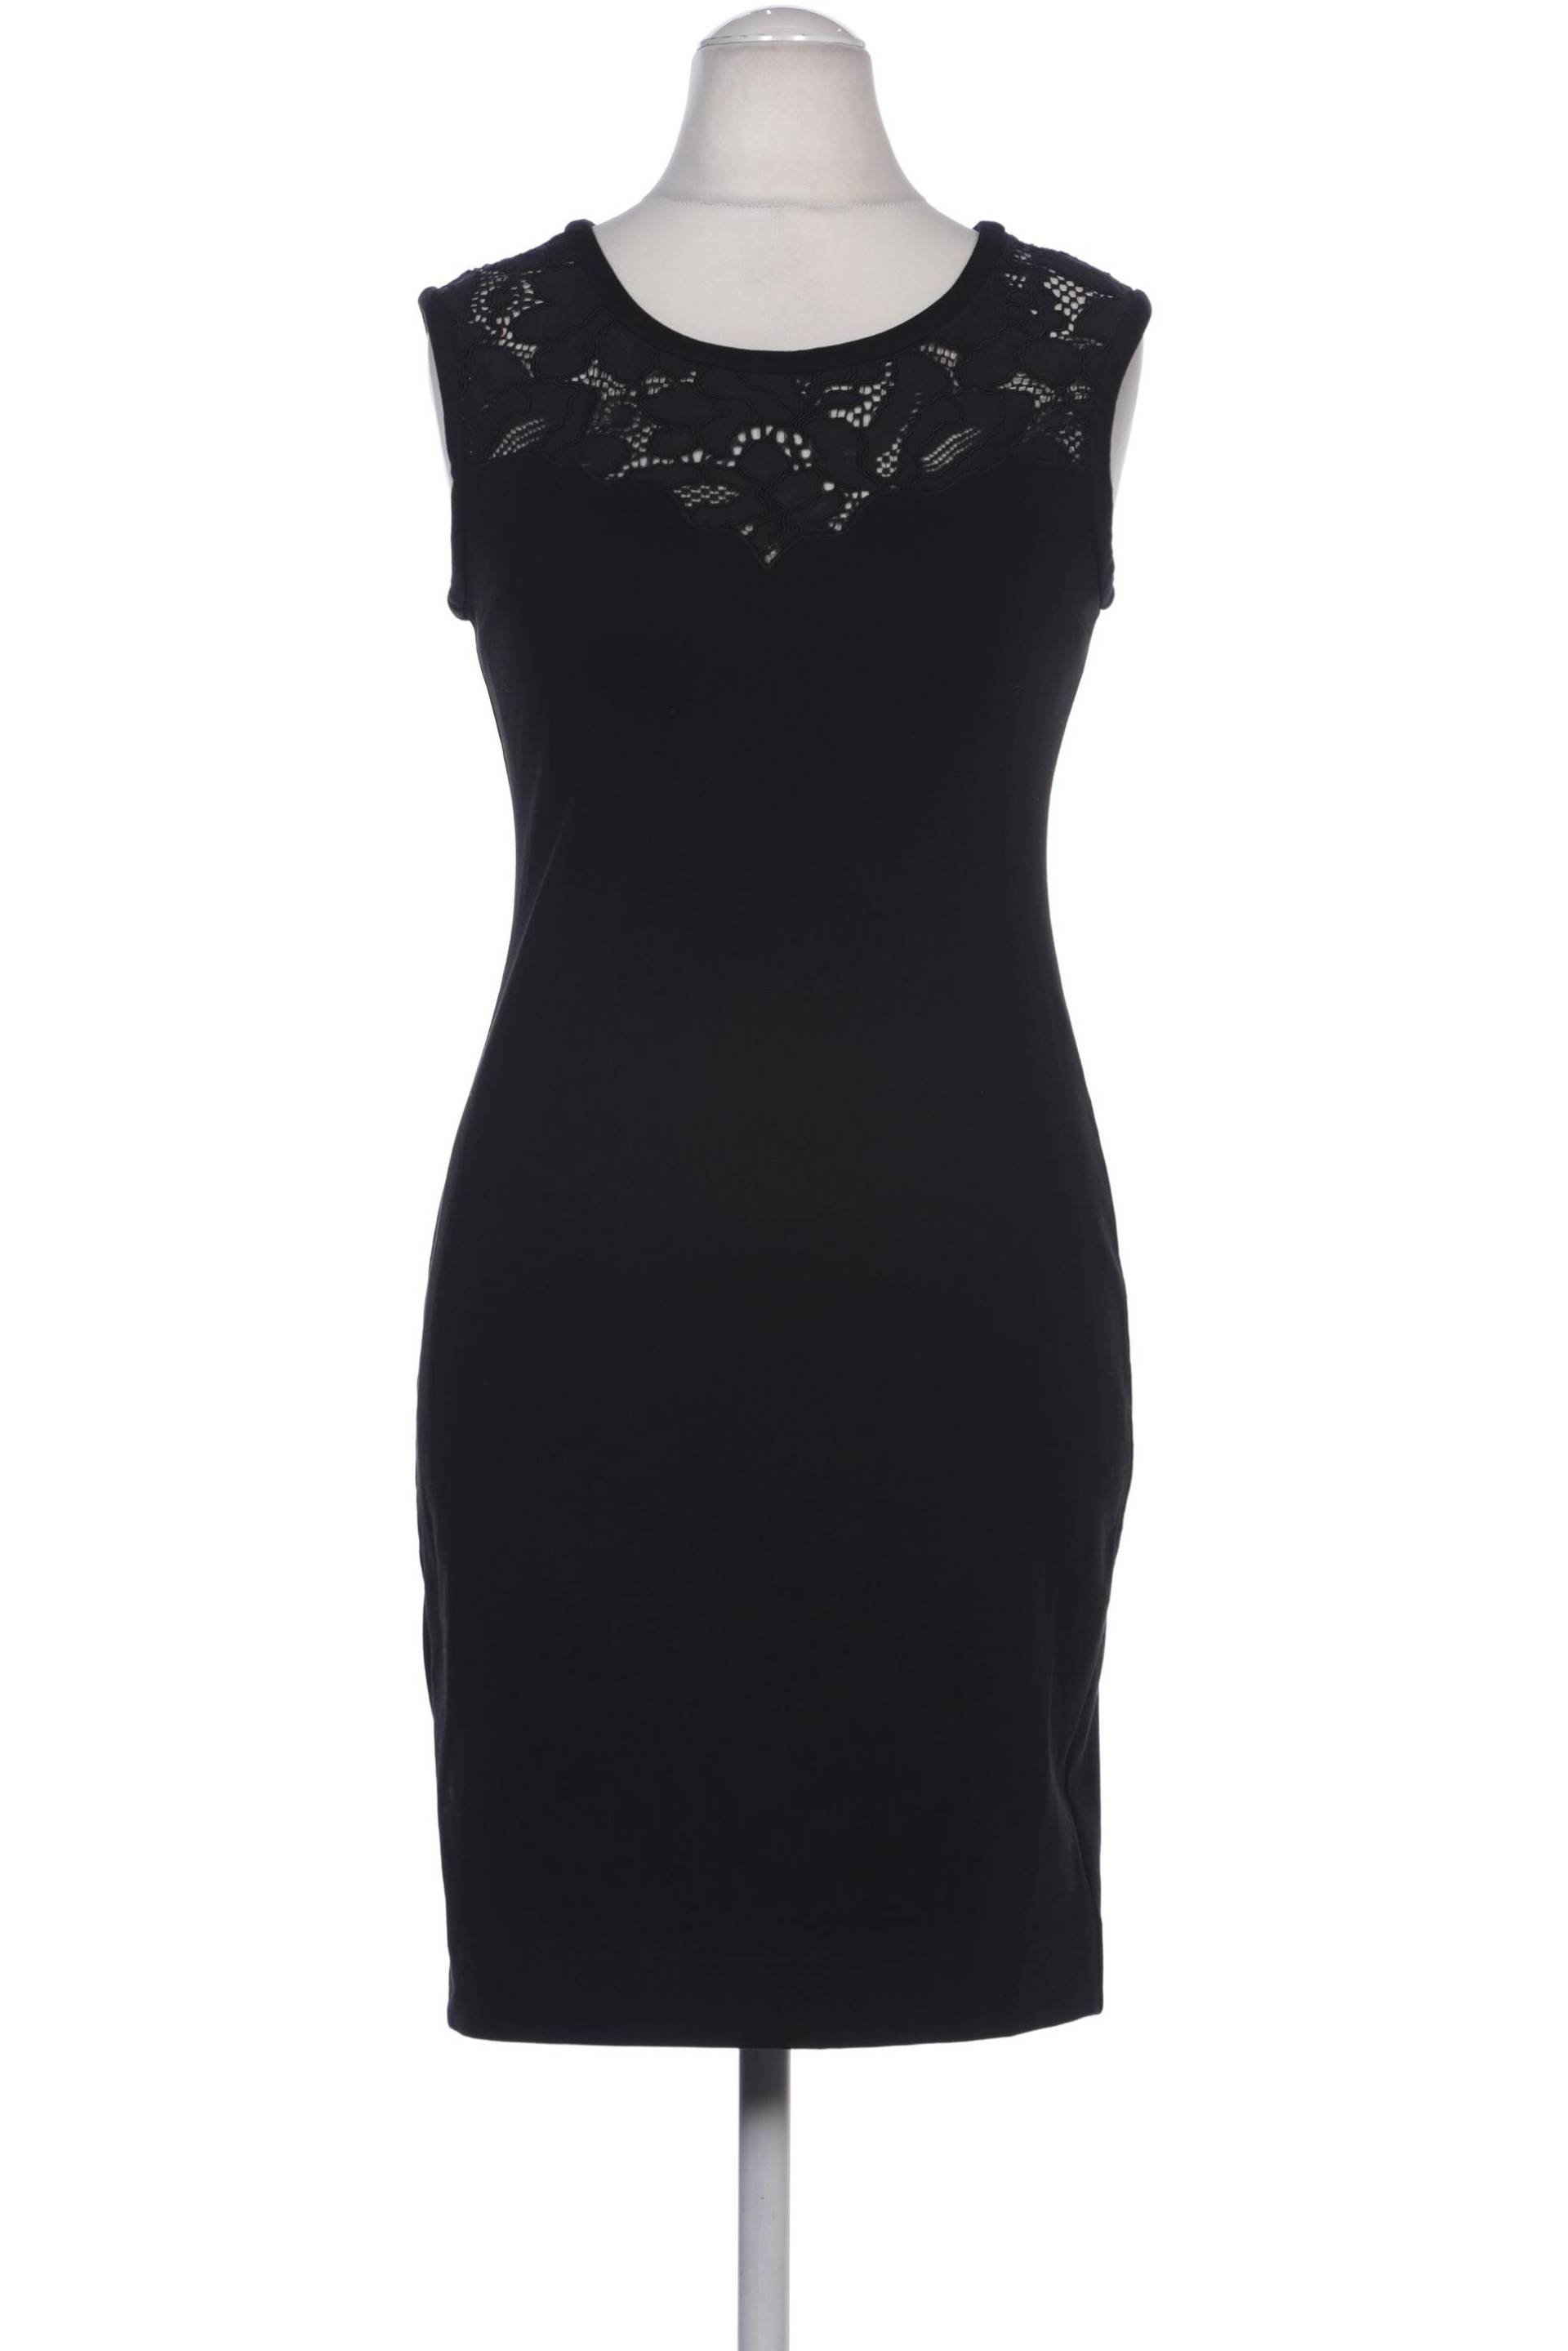 Sandro Damen Kleid, schwarz, Gr. 38 von sandro